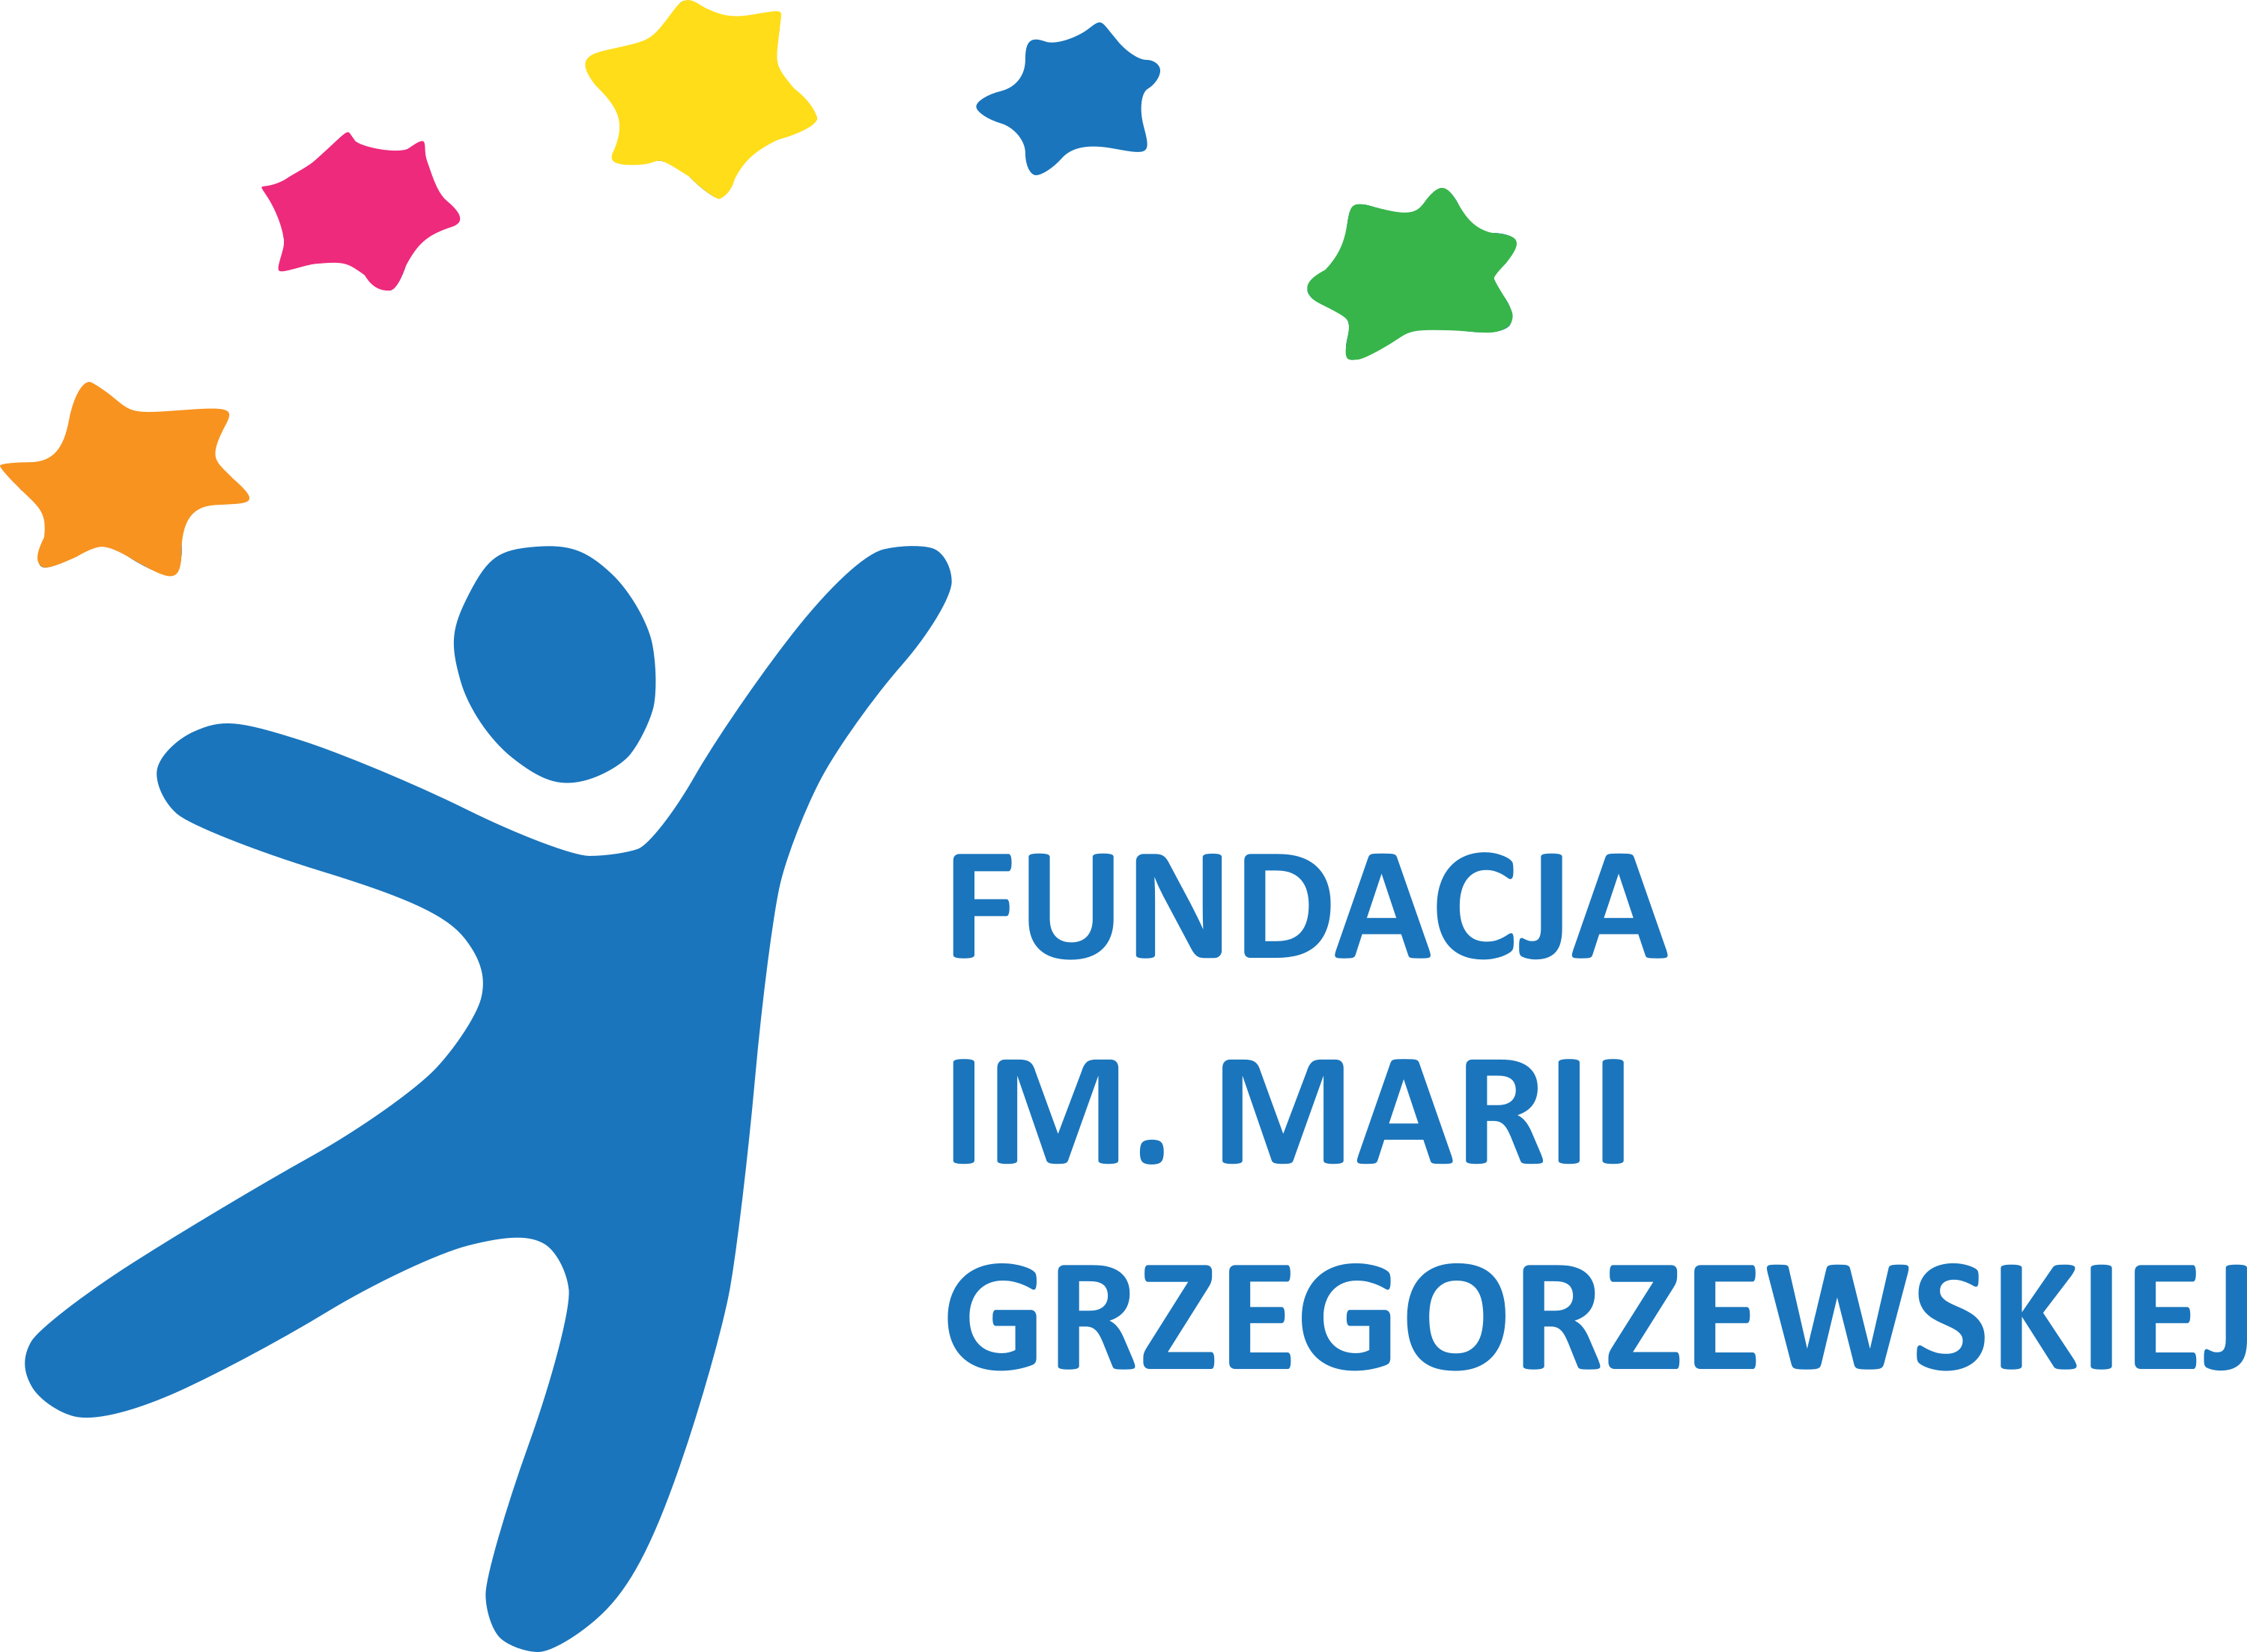 logo of the Maria Grzegorzewska Foundation